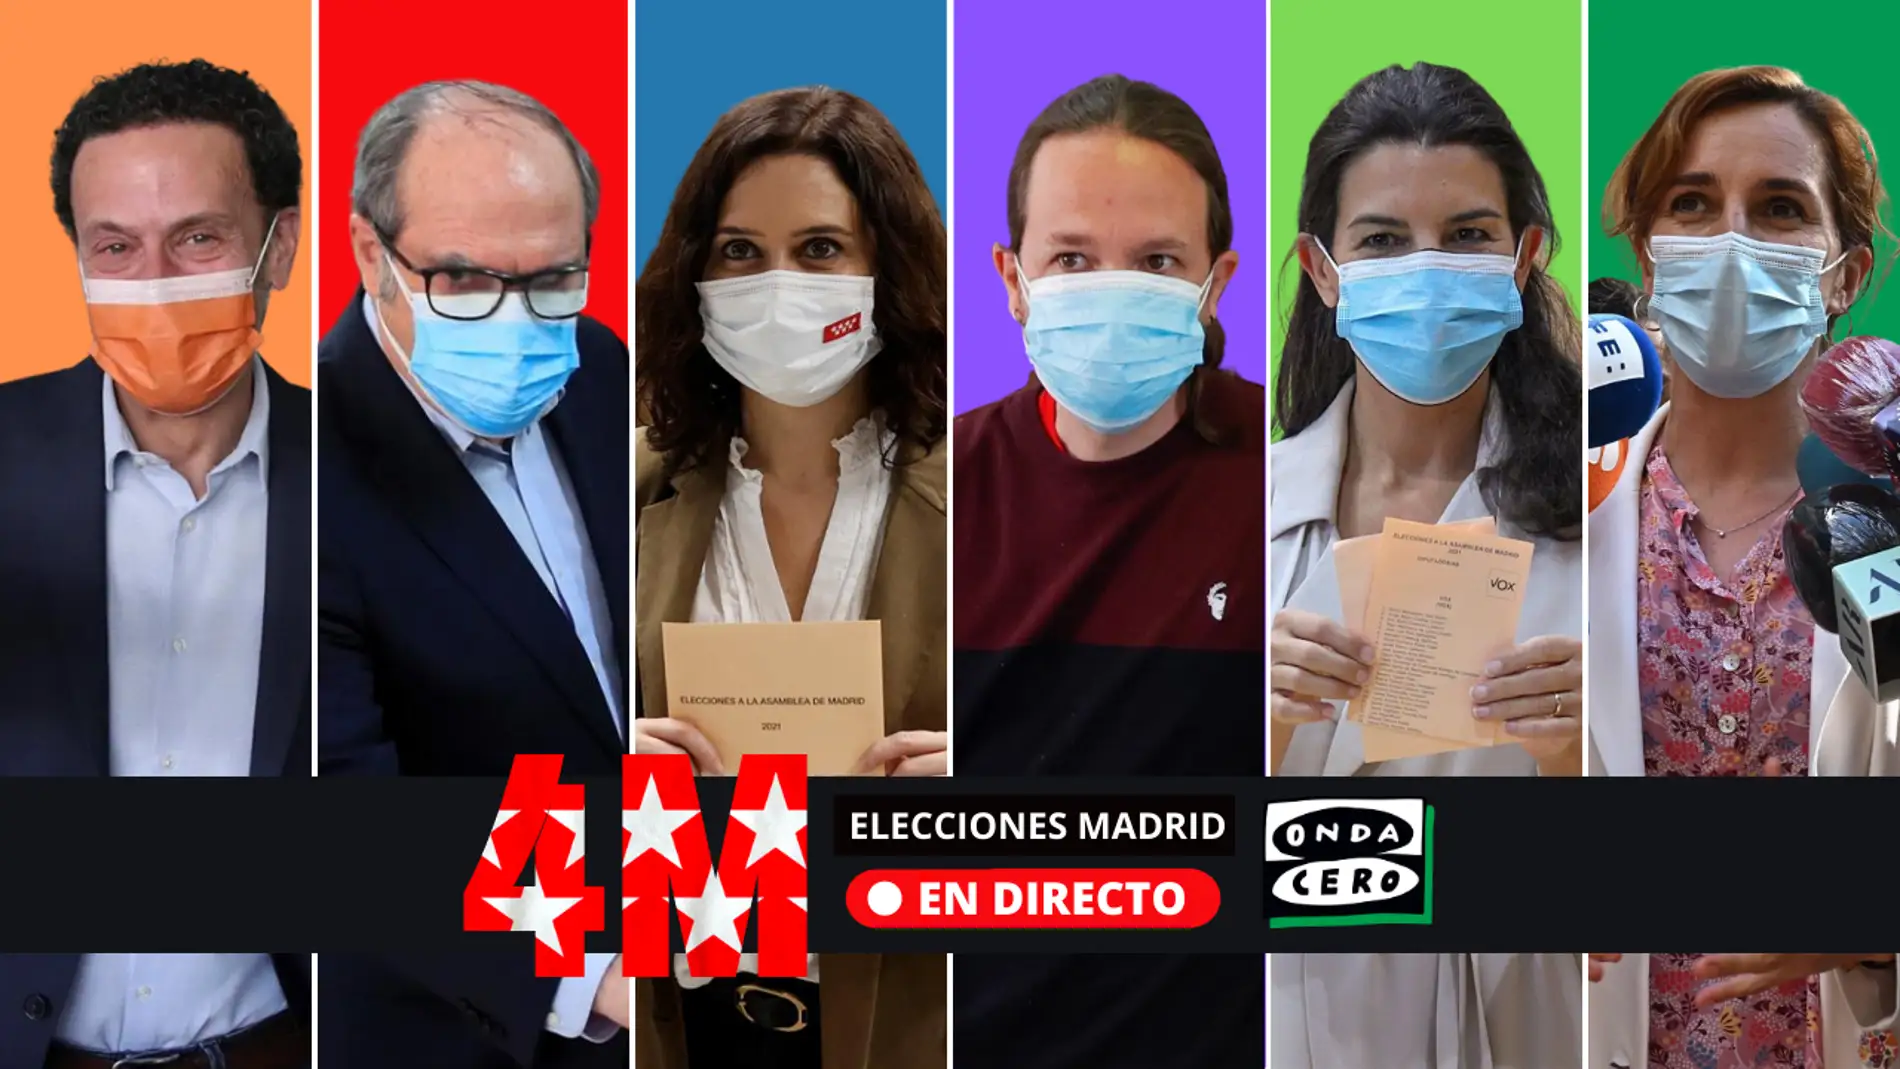 Pactos Elecciones Madrid: consulta los posibles pactos para gobernar tras el resultado de las elecciones madrileñas